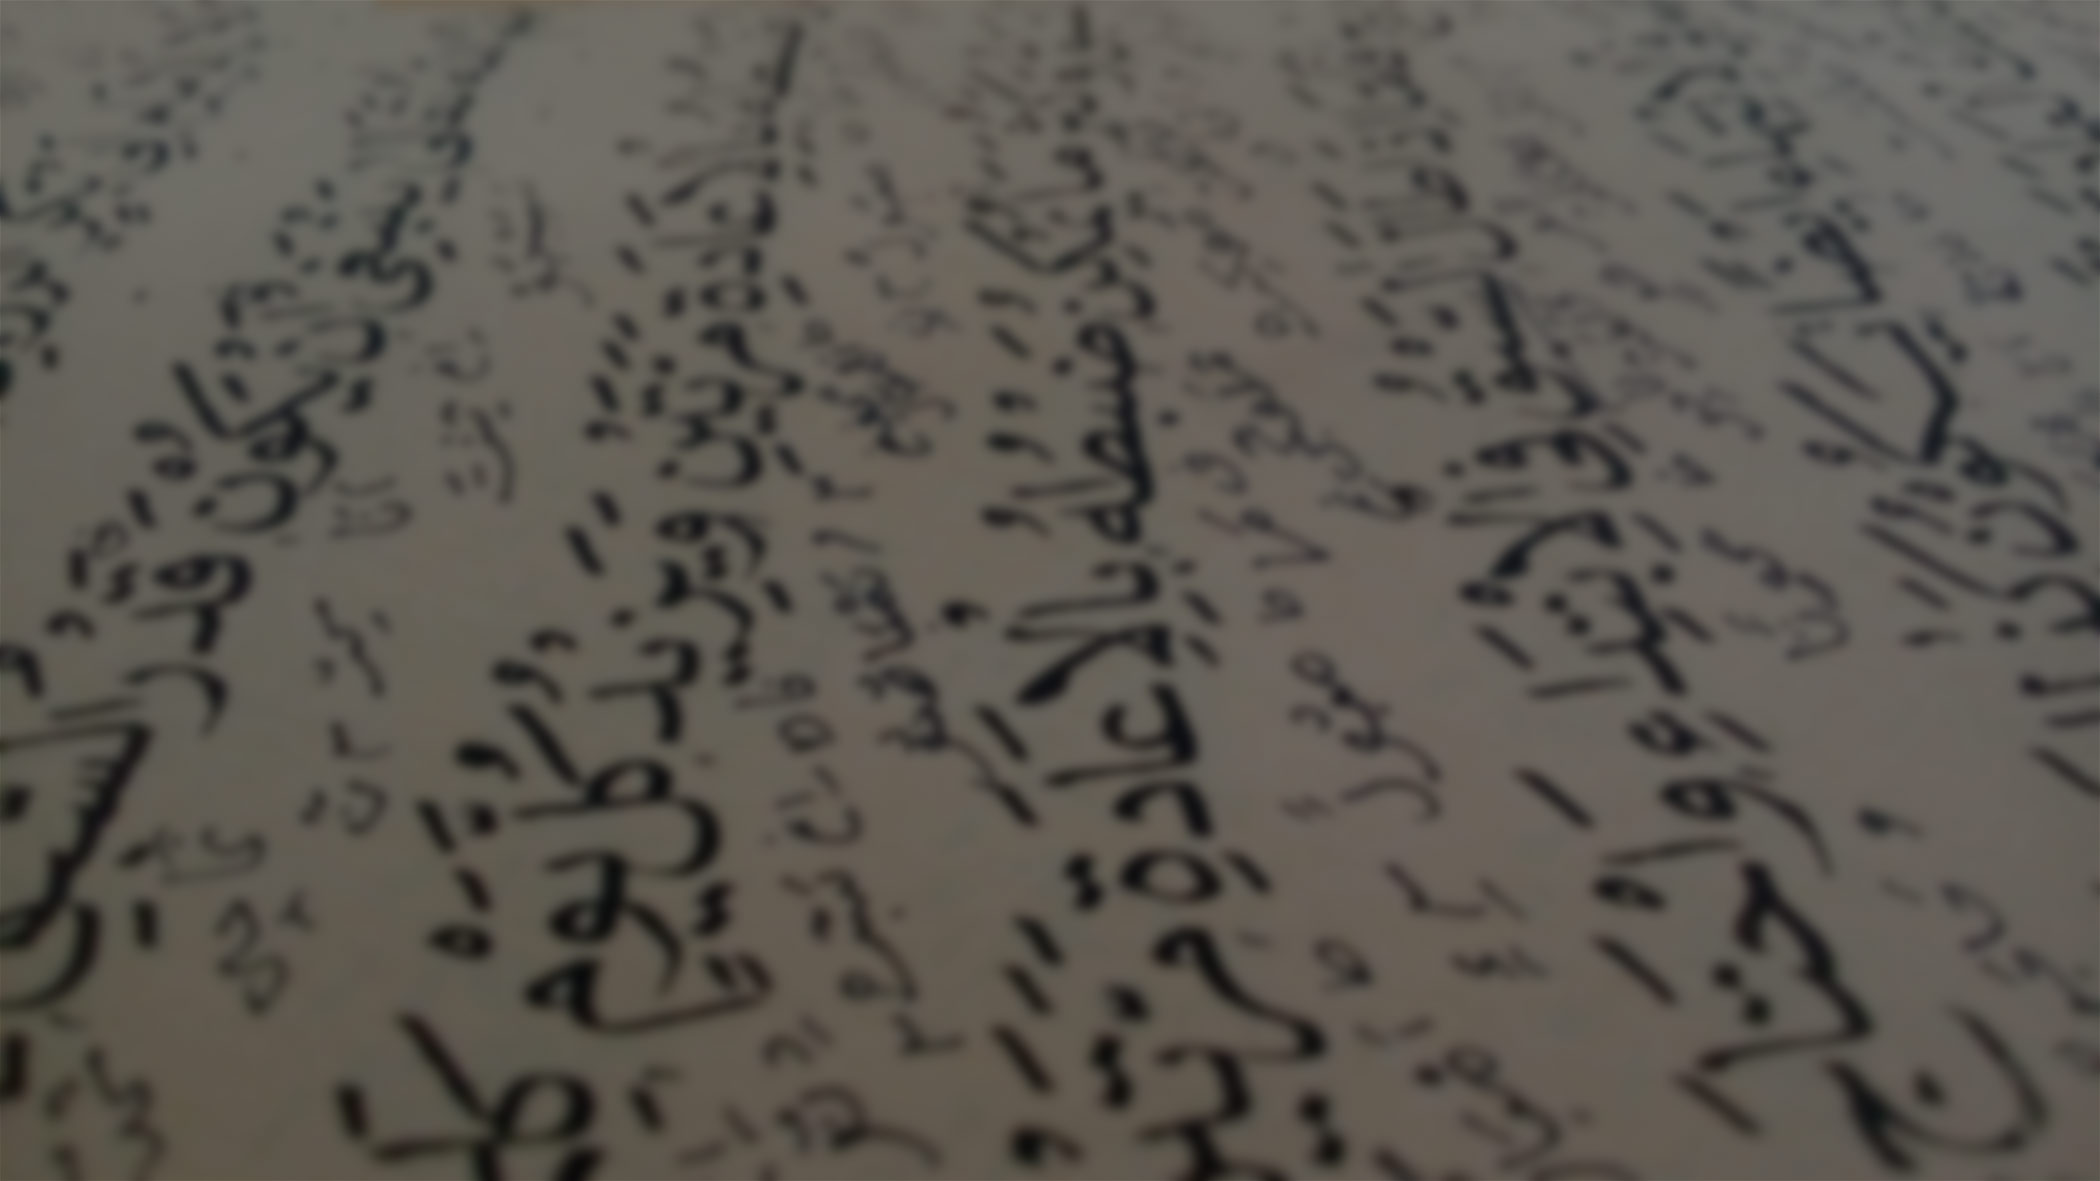 Verschwommen im Hintergrund sind arabische Schriftzeichen zu erkennen